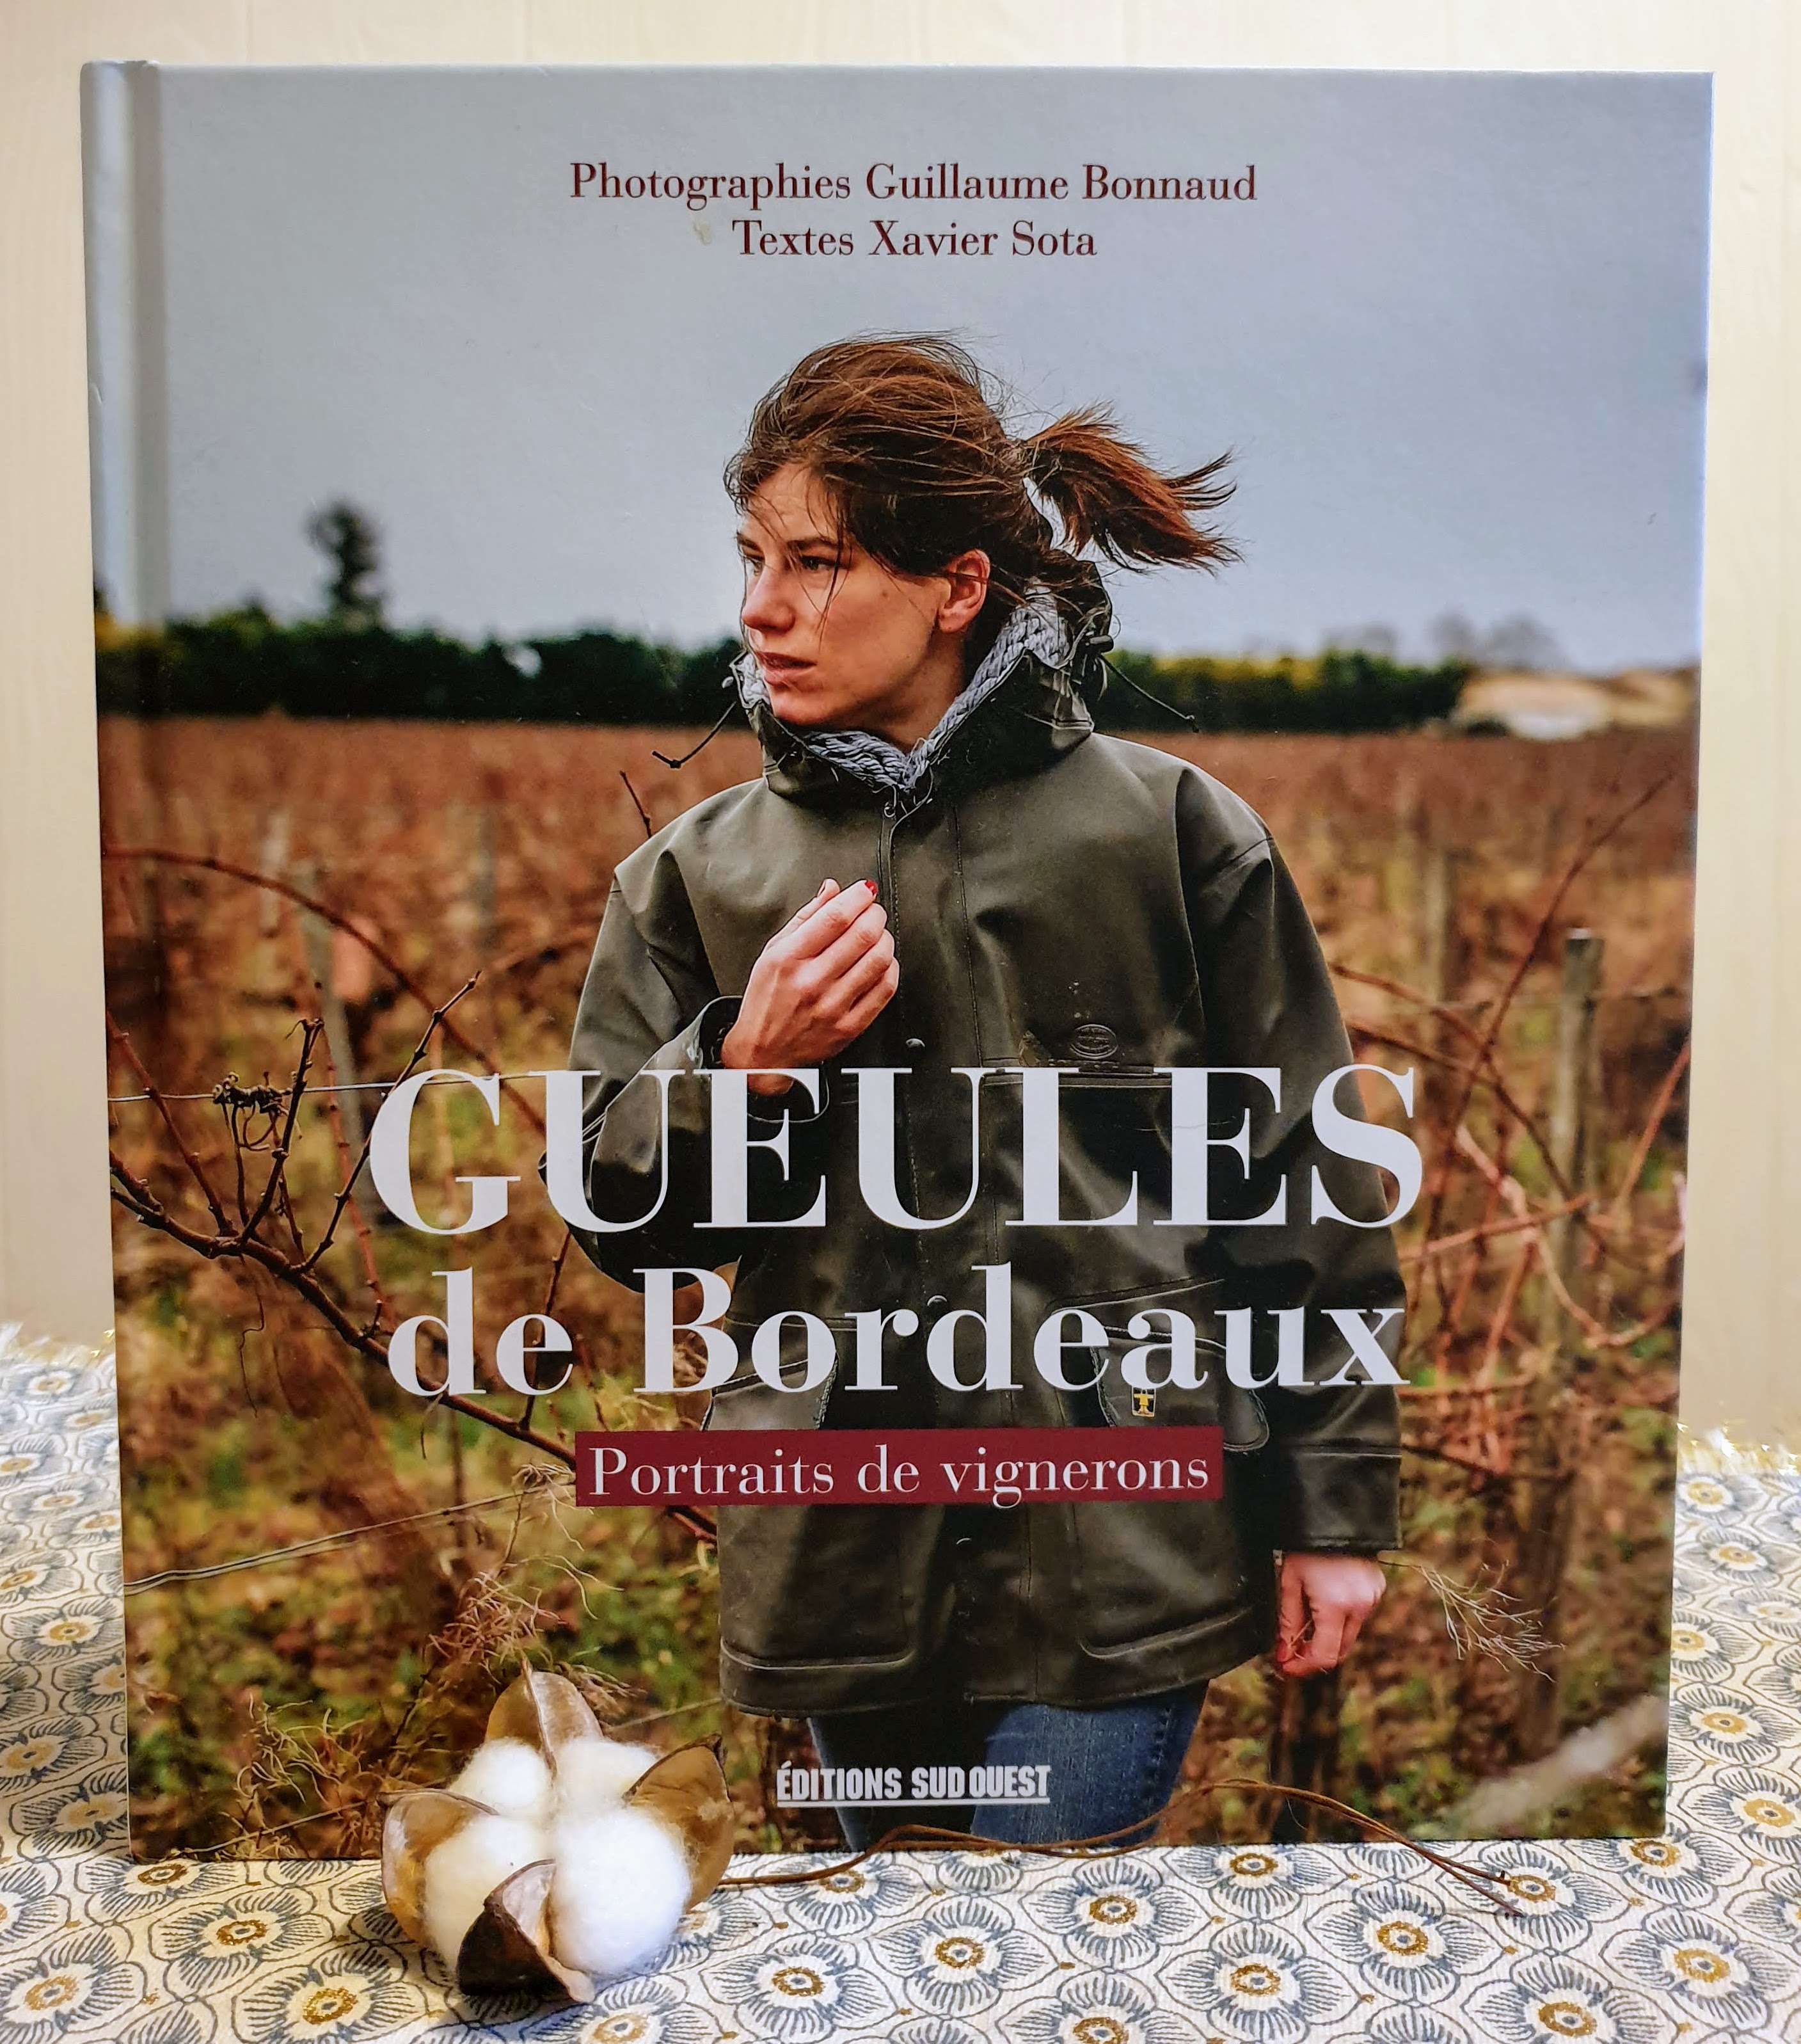 Gueules de Bordeaux, portraits de vignerons